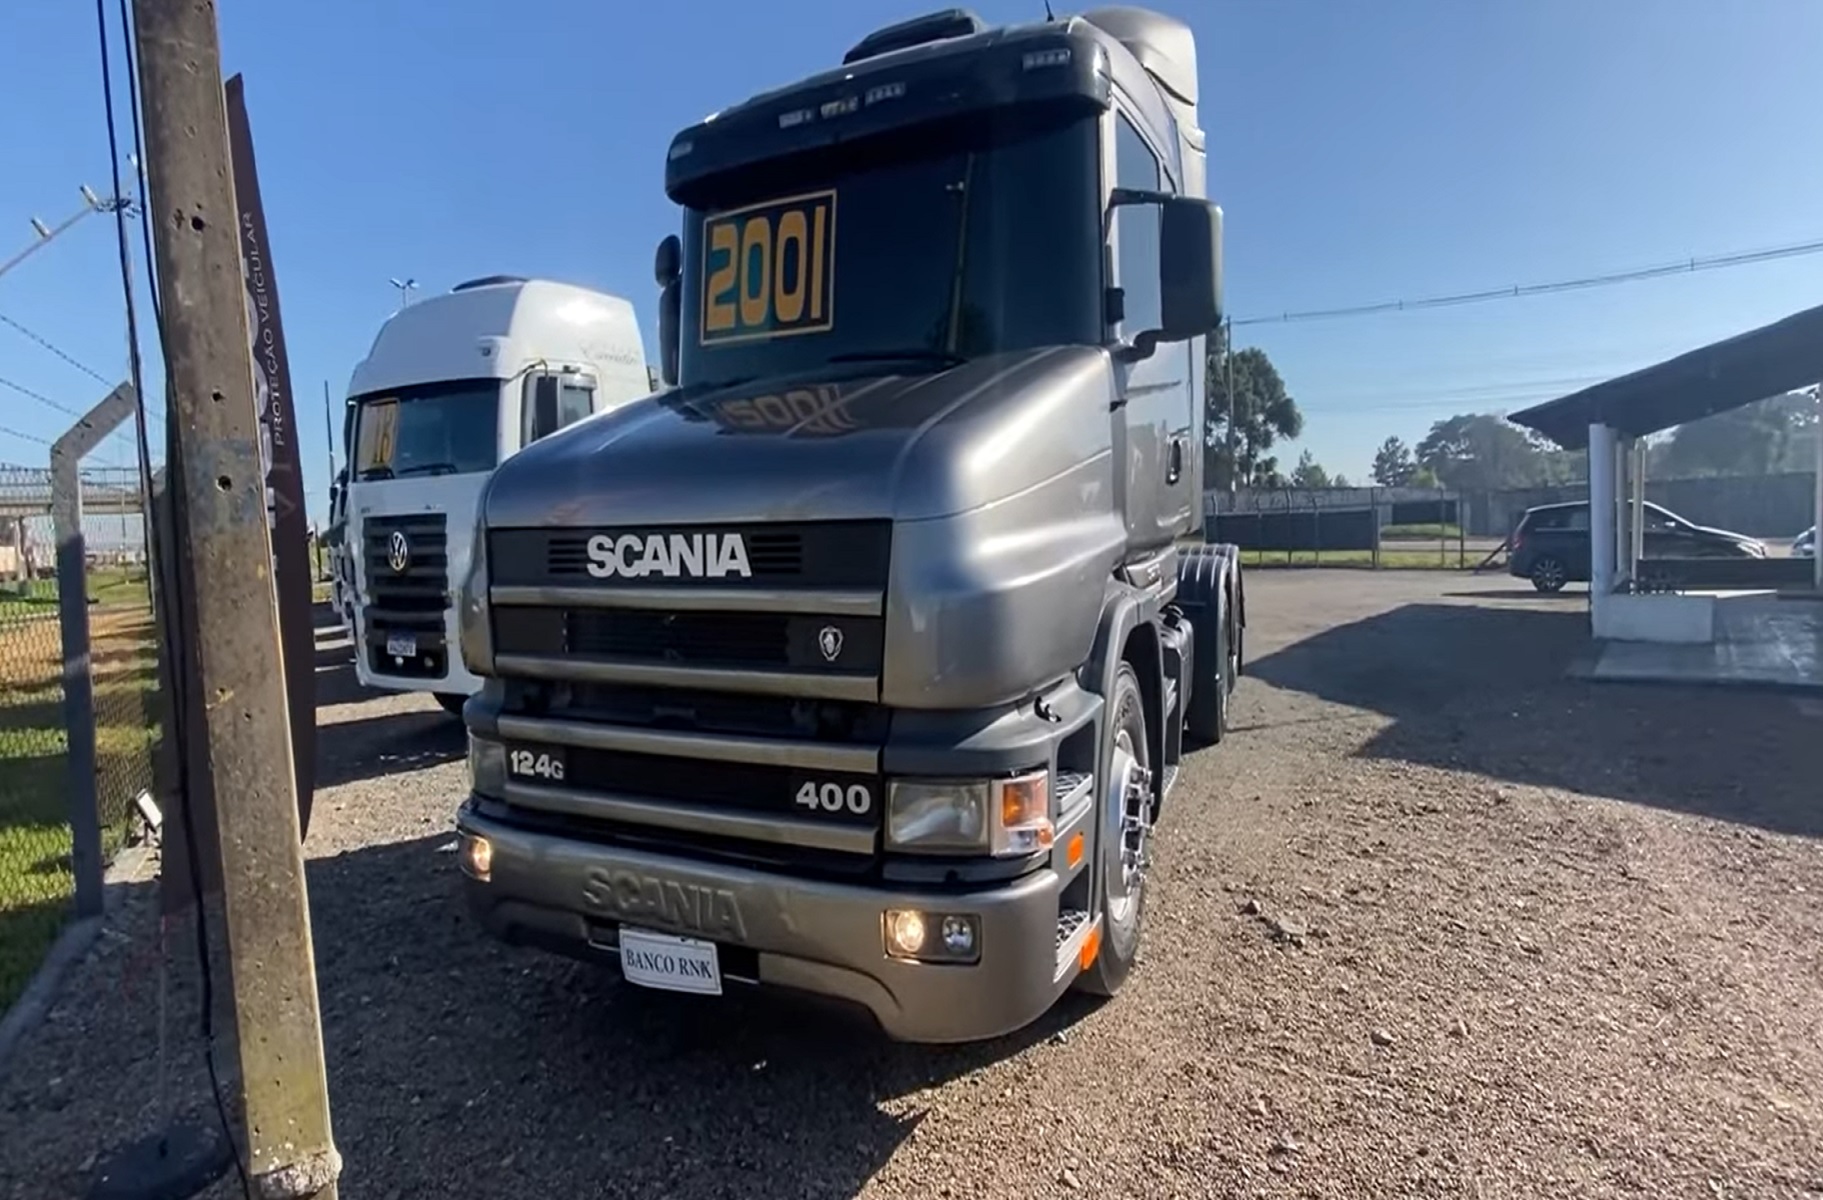 Relíquia da Scania é colocada à venda em impecável estado de conservação